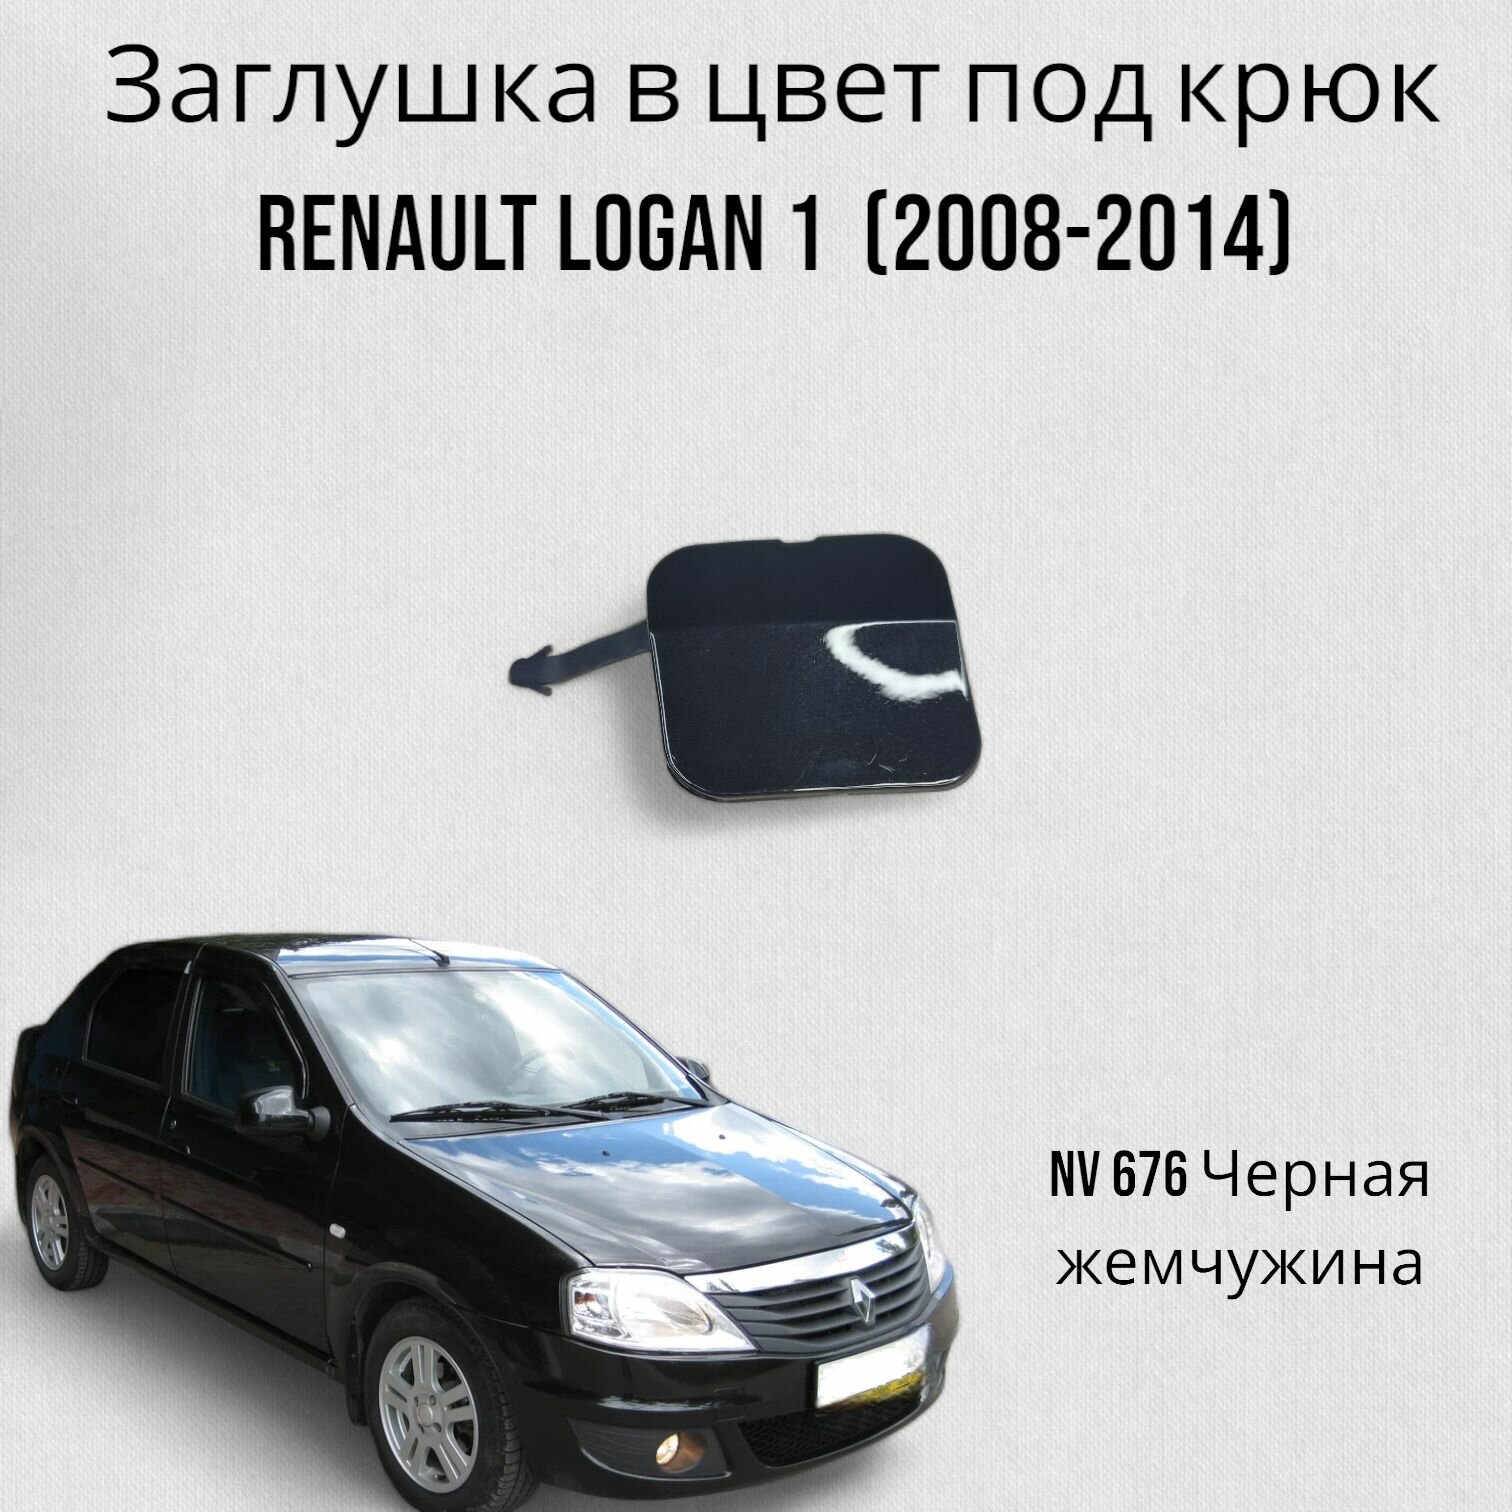 Заглушка в цвет под крюк Renault Logan 1 Рено Логан (2008-2014) NV 676 Черная жемчужина